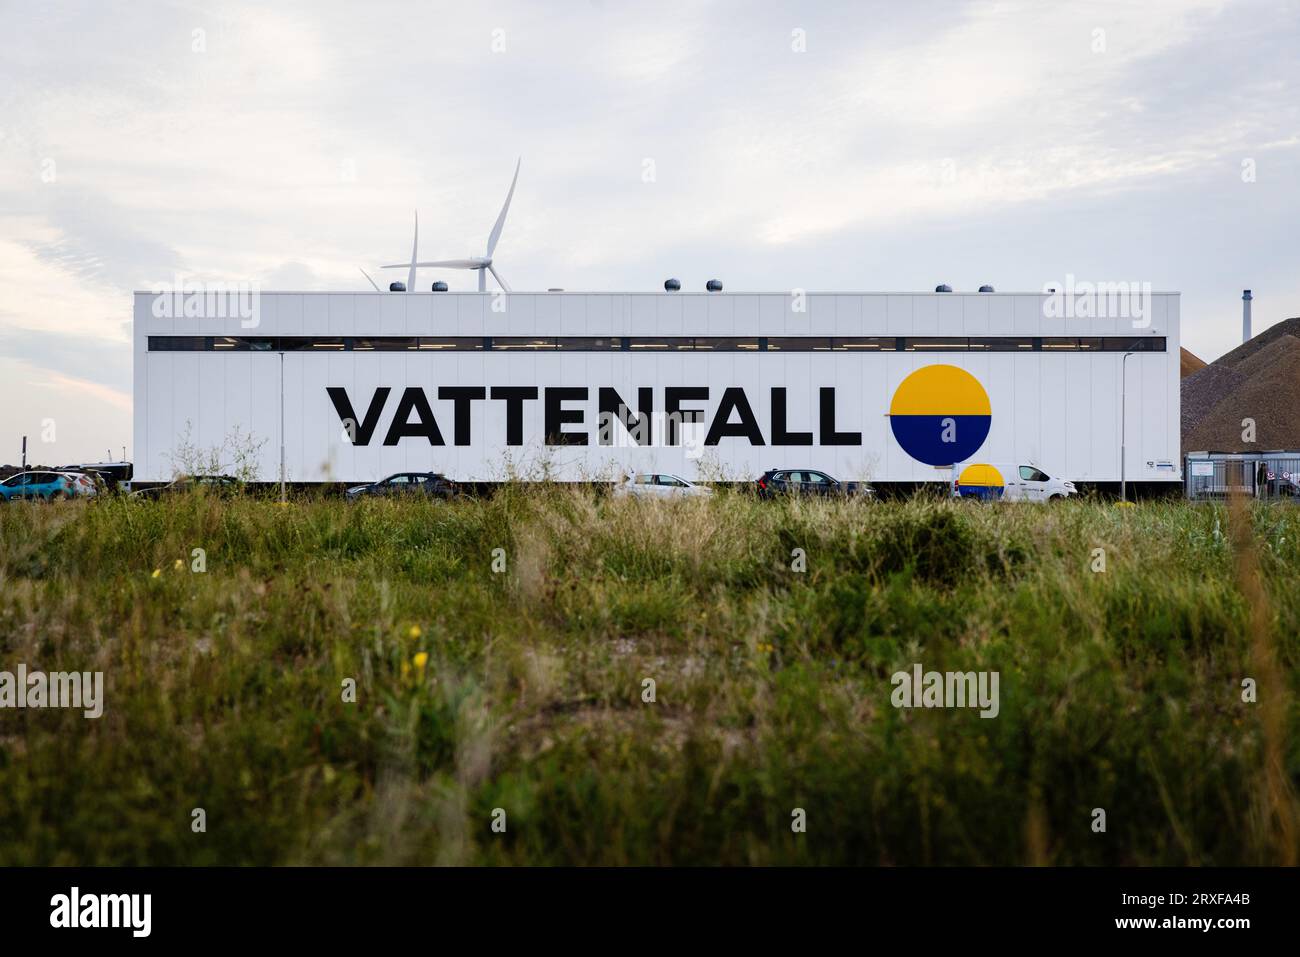 IJMUIDEN - techniciens Vattenfall dans le bâtiment opérations & Maintenance. Le parc éolien se compose de 139 éoliennes et est situé à environ dix-huit kilomètres de la côte. Il alimente plus de 1,5 millions de foyers. ANP JEFFREY GROENEWEG pays-bas sorti - belgique sorti Banque D'Images